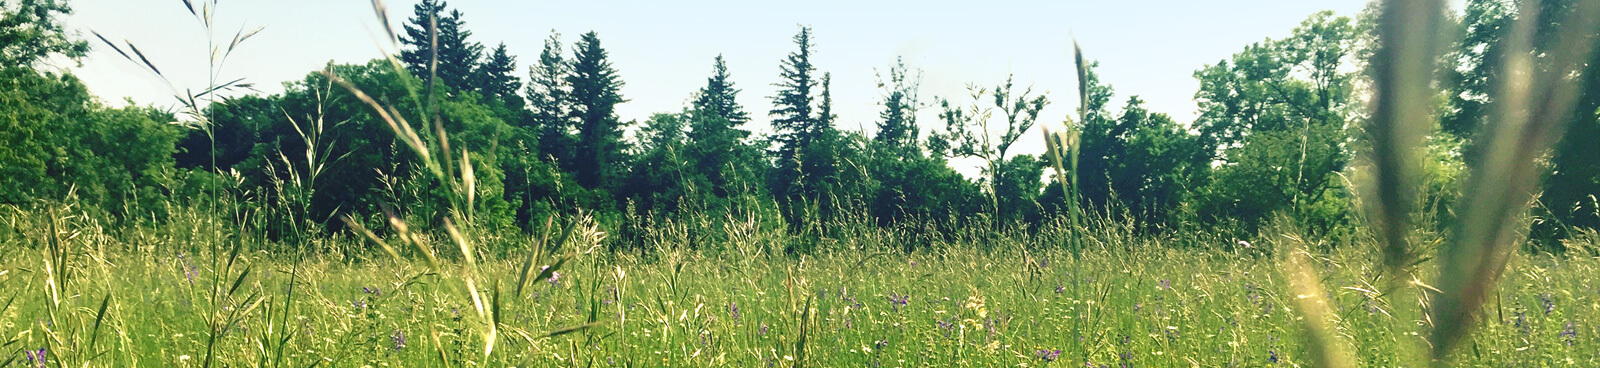 Landschaftsbild mit Wiese und Bäumen des Biosphärengebiets Schwäbische Alb